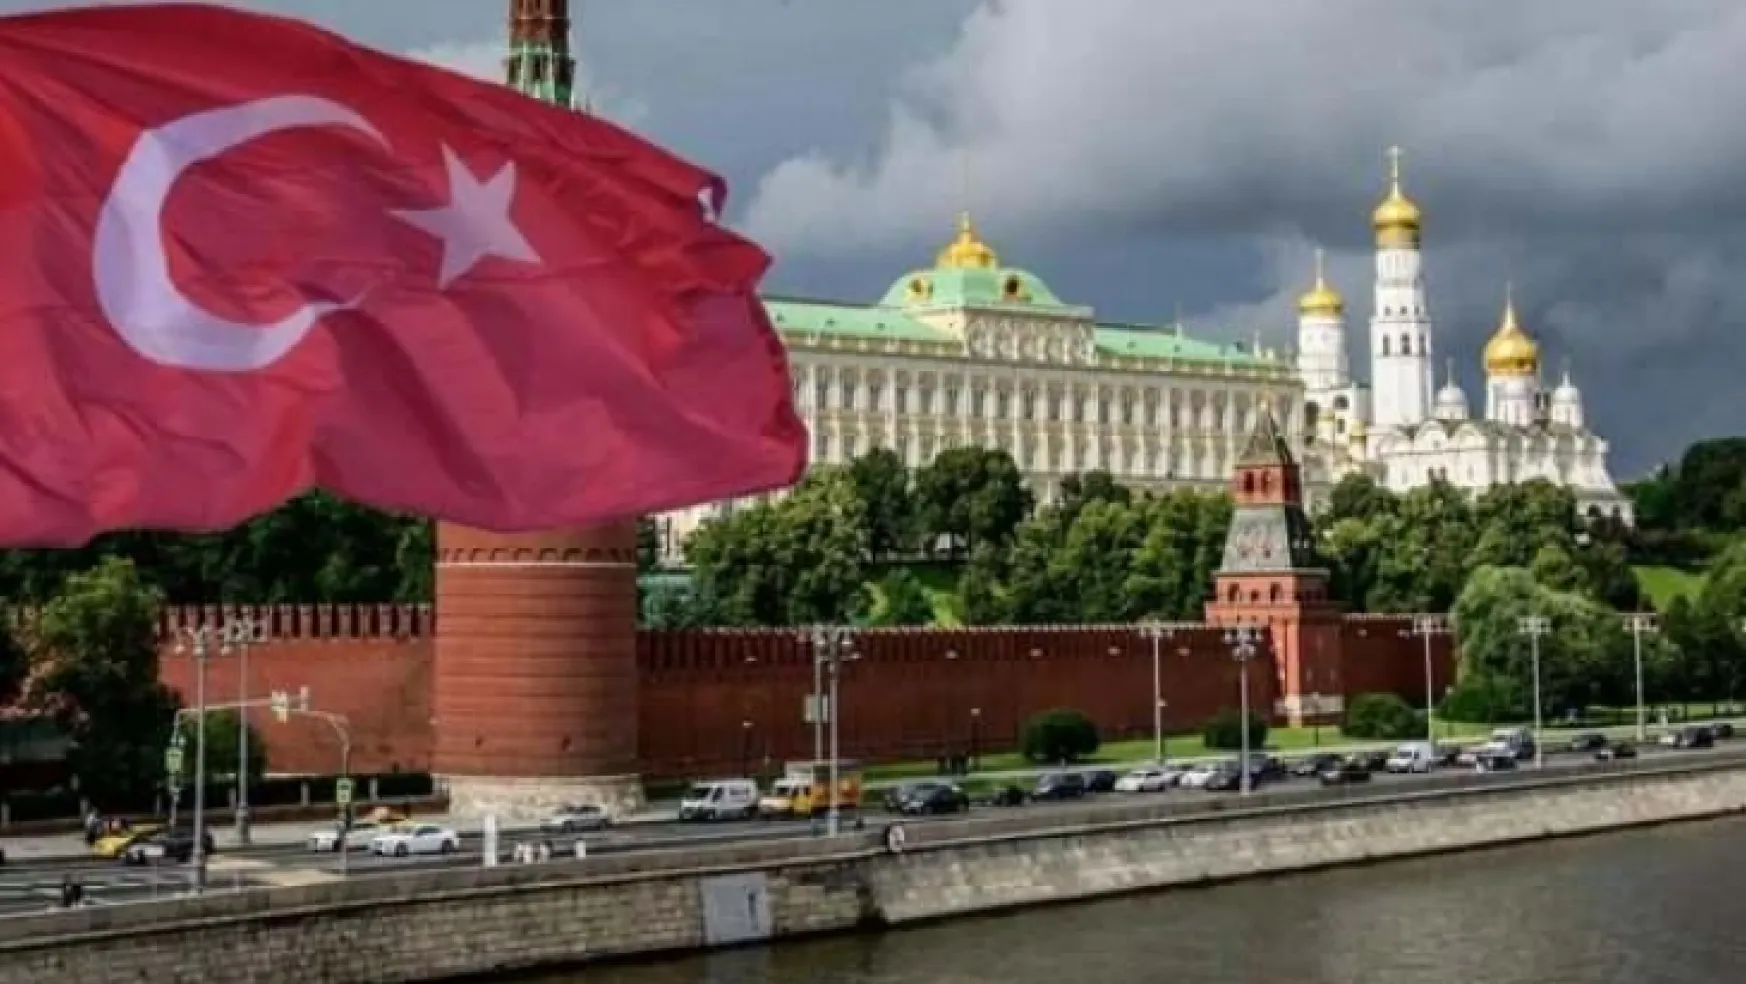 Rus analistten çarpıcı çıkış: Kazanan Türkiye